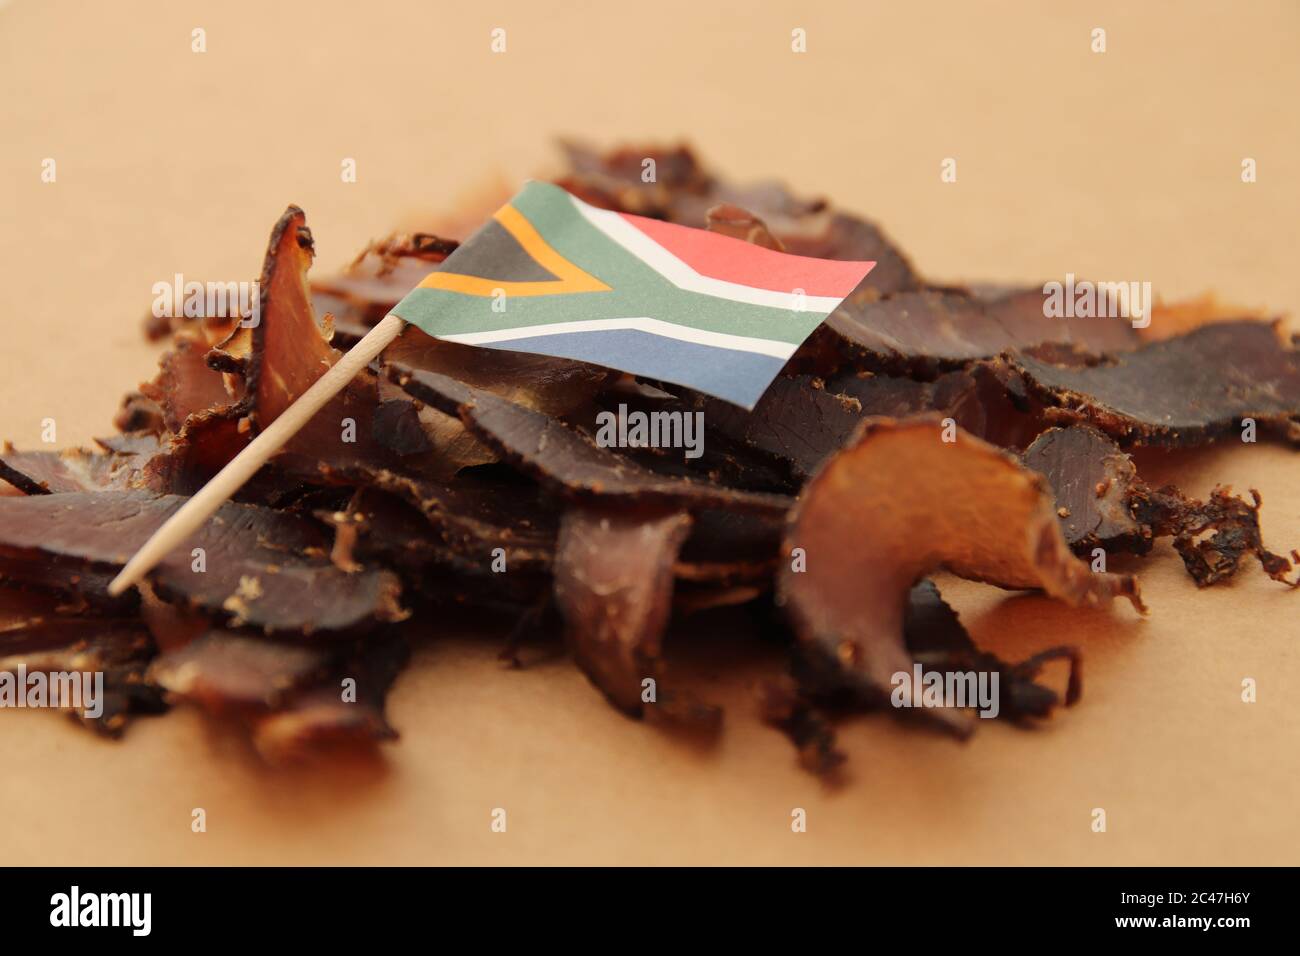 Biltong (viande séchée) sur une planche de bois, c'est une collation alimentaire traditionnelle en Afrique du Sud. Banque D'Images